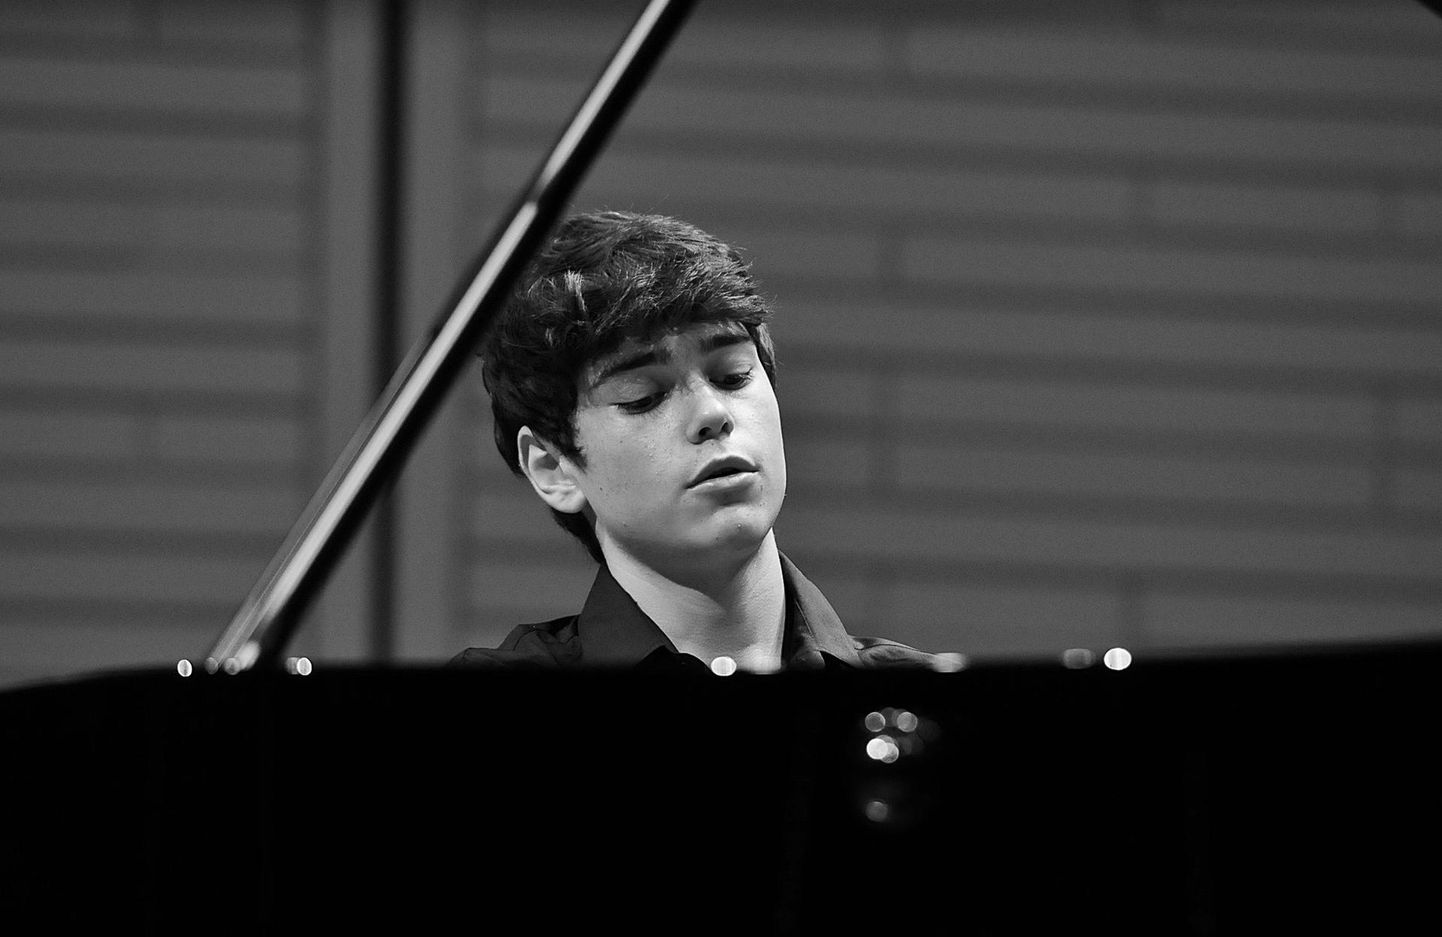 Andres Mustonen nimetab Iisraeli noort pianisti, 2000. aastal sündinud Tom Borrow’d kahtluseta imelapseks ja tulevaseks maailmalavade superstaariks.